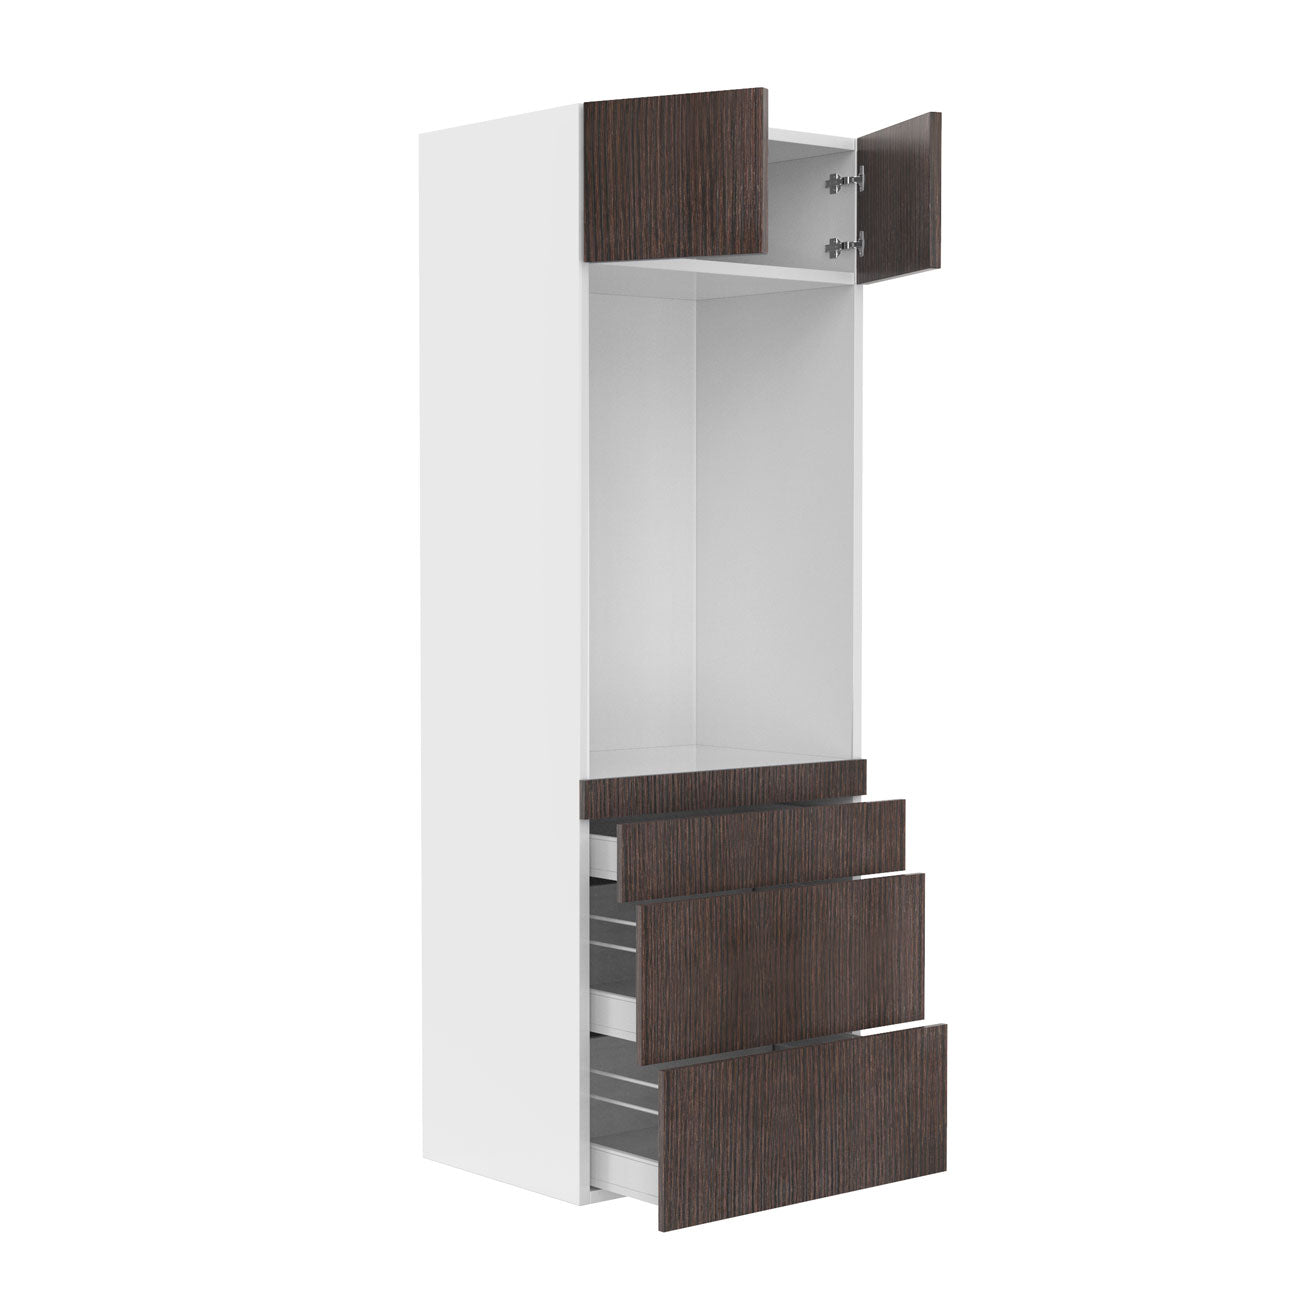 RTA - Brown Oak - Single Oven Tall Cabinets | 30"W x 84"H x 23.8"D